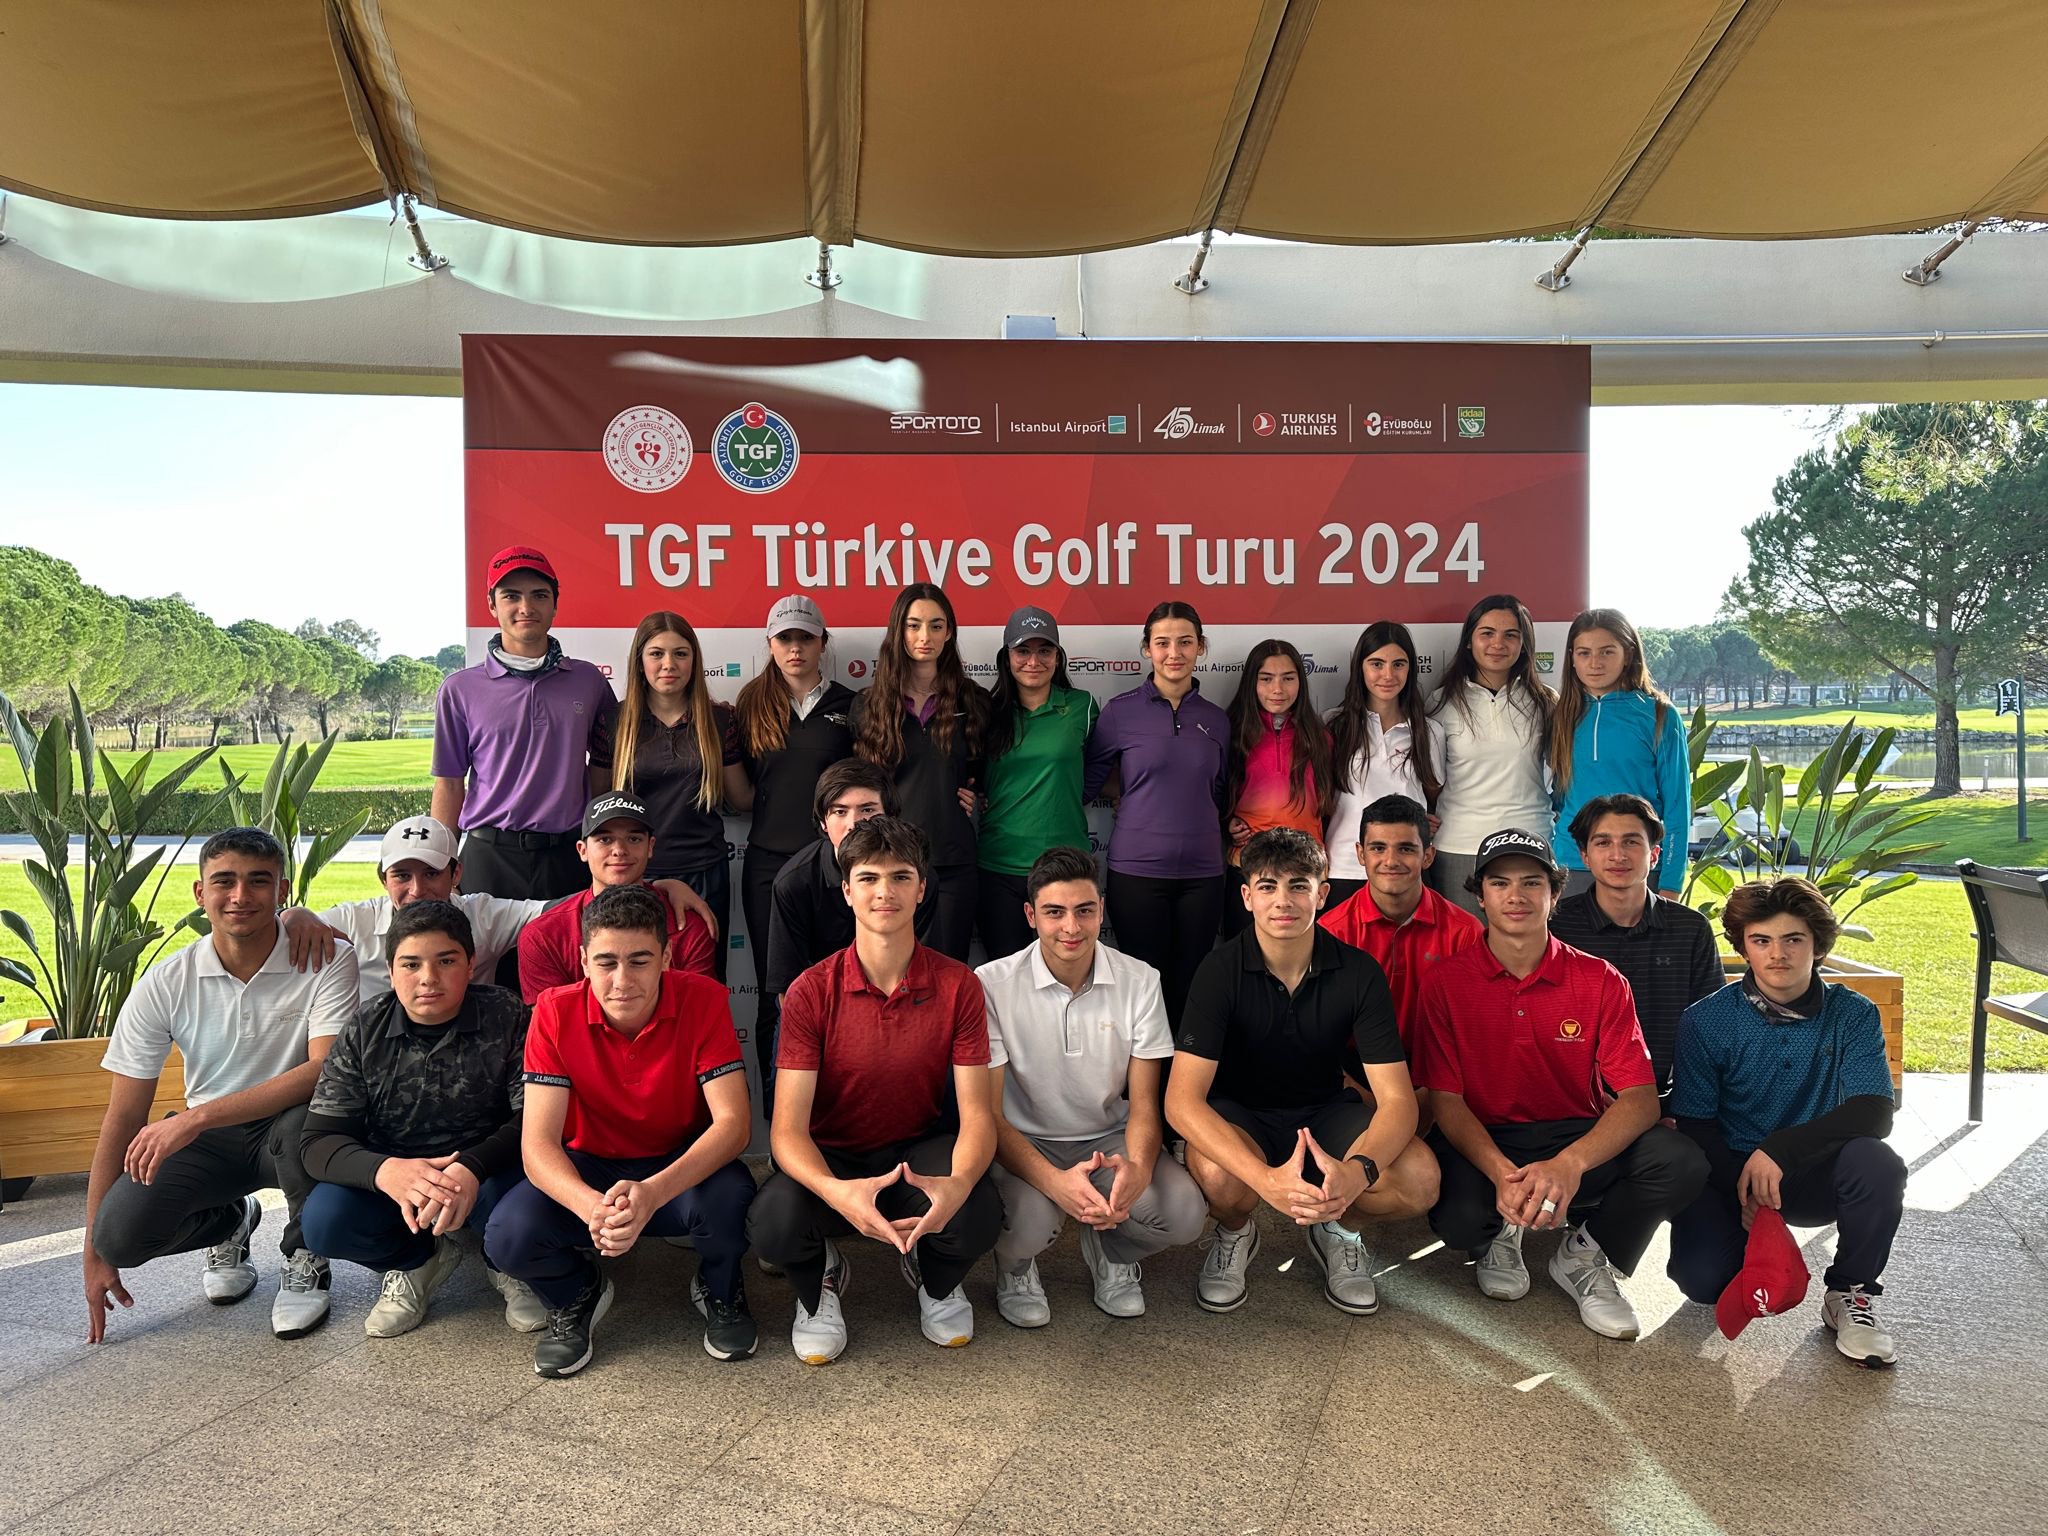 Tgf Turkiye Golf Turu Secme Musabakalarinda Elemeyi Gecen Sporcular Belli Oldu 1993 Dhaphoto1